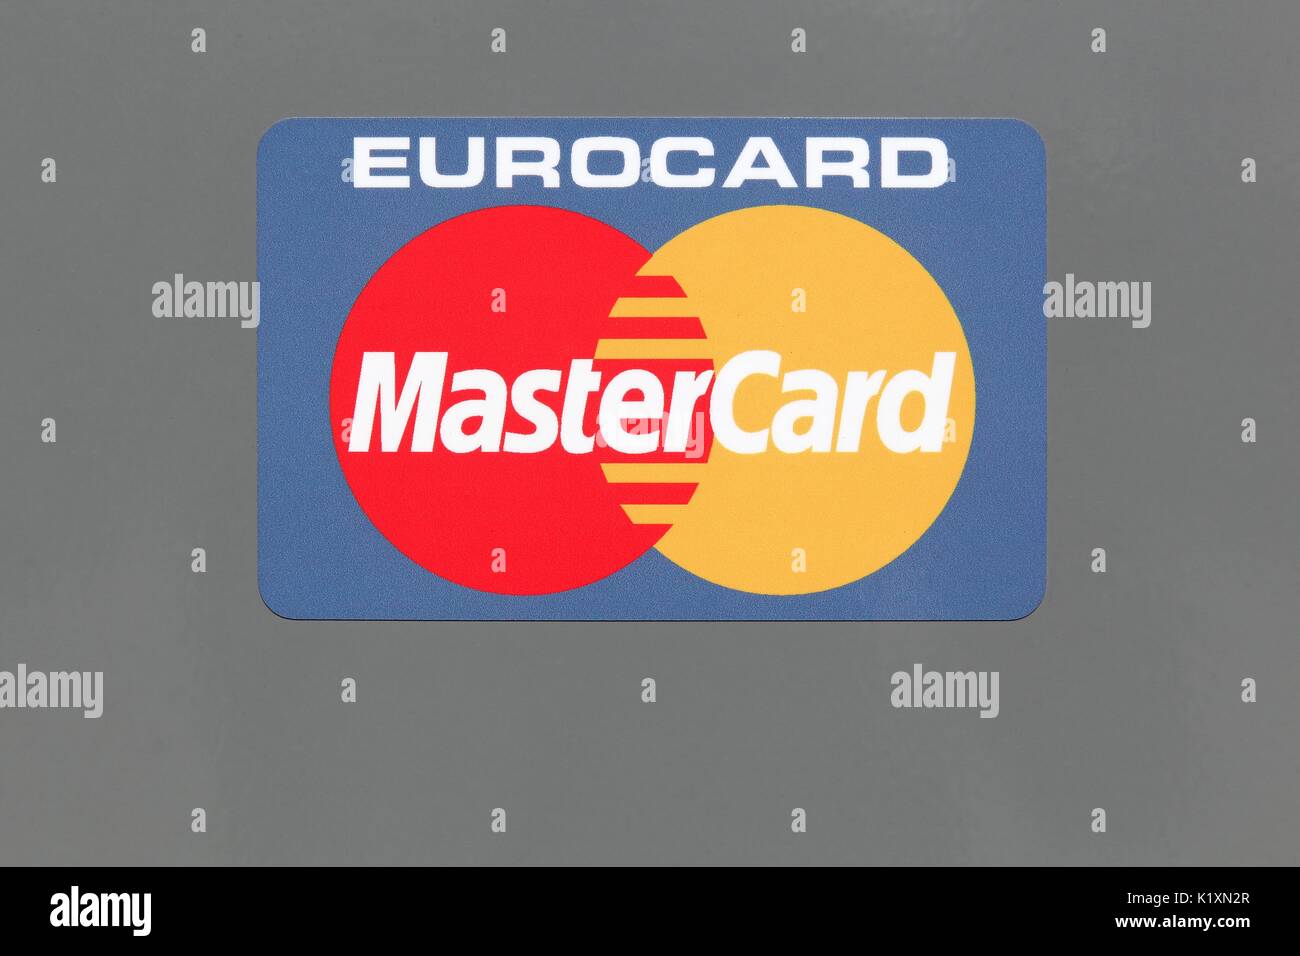 Hvide Sande, Dänemark - 1 August 2017: Logo von Mastercard auf einem Panel. Mastercard ist eine US-amerikanische multinationale Financial Services Corporation Stockfoto